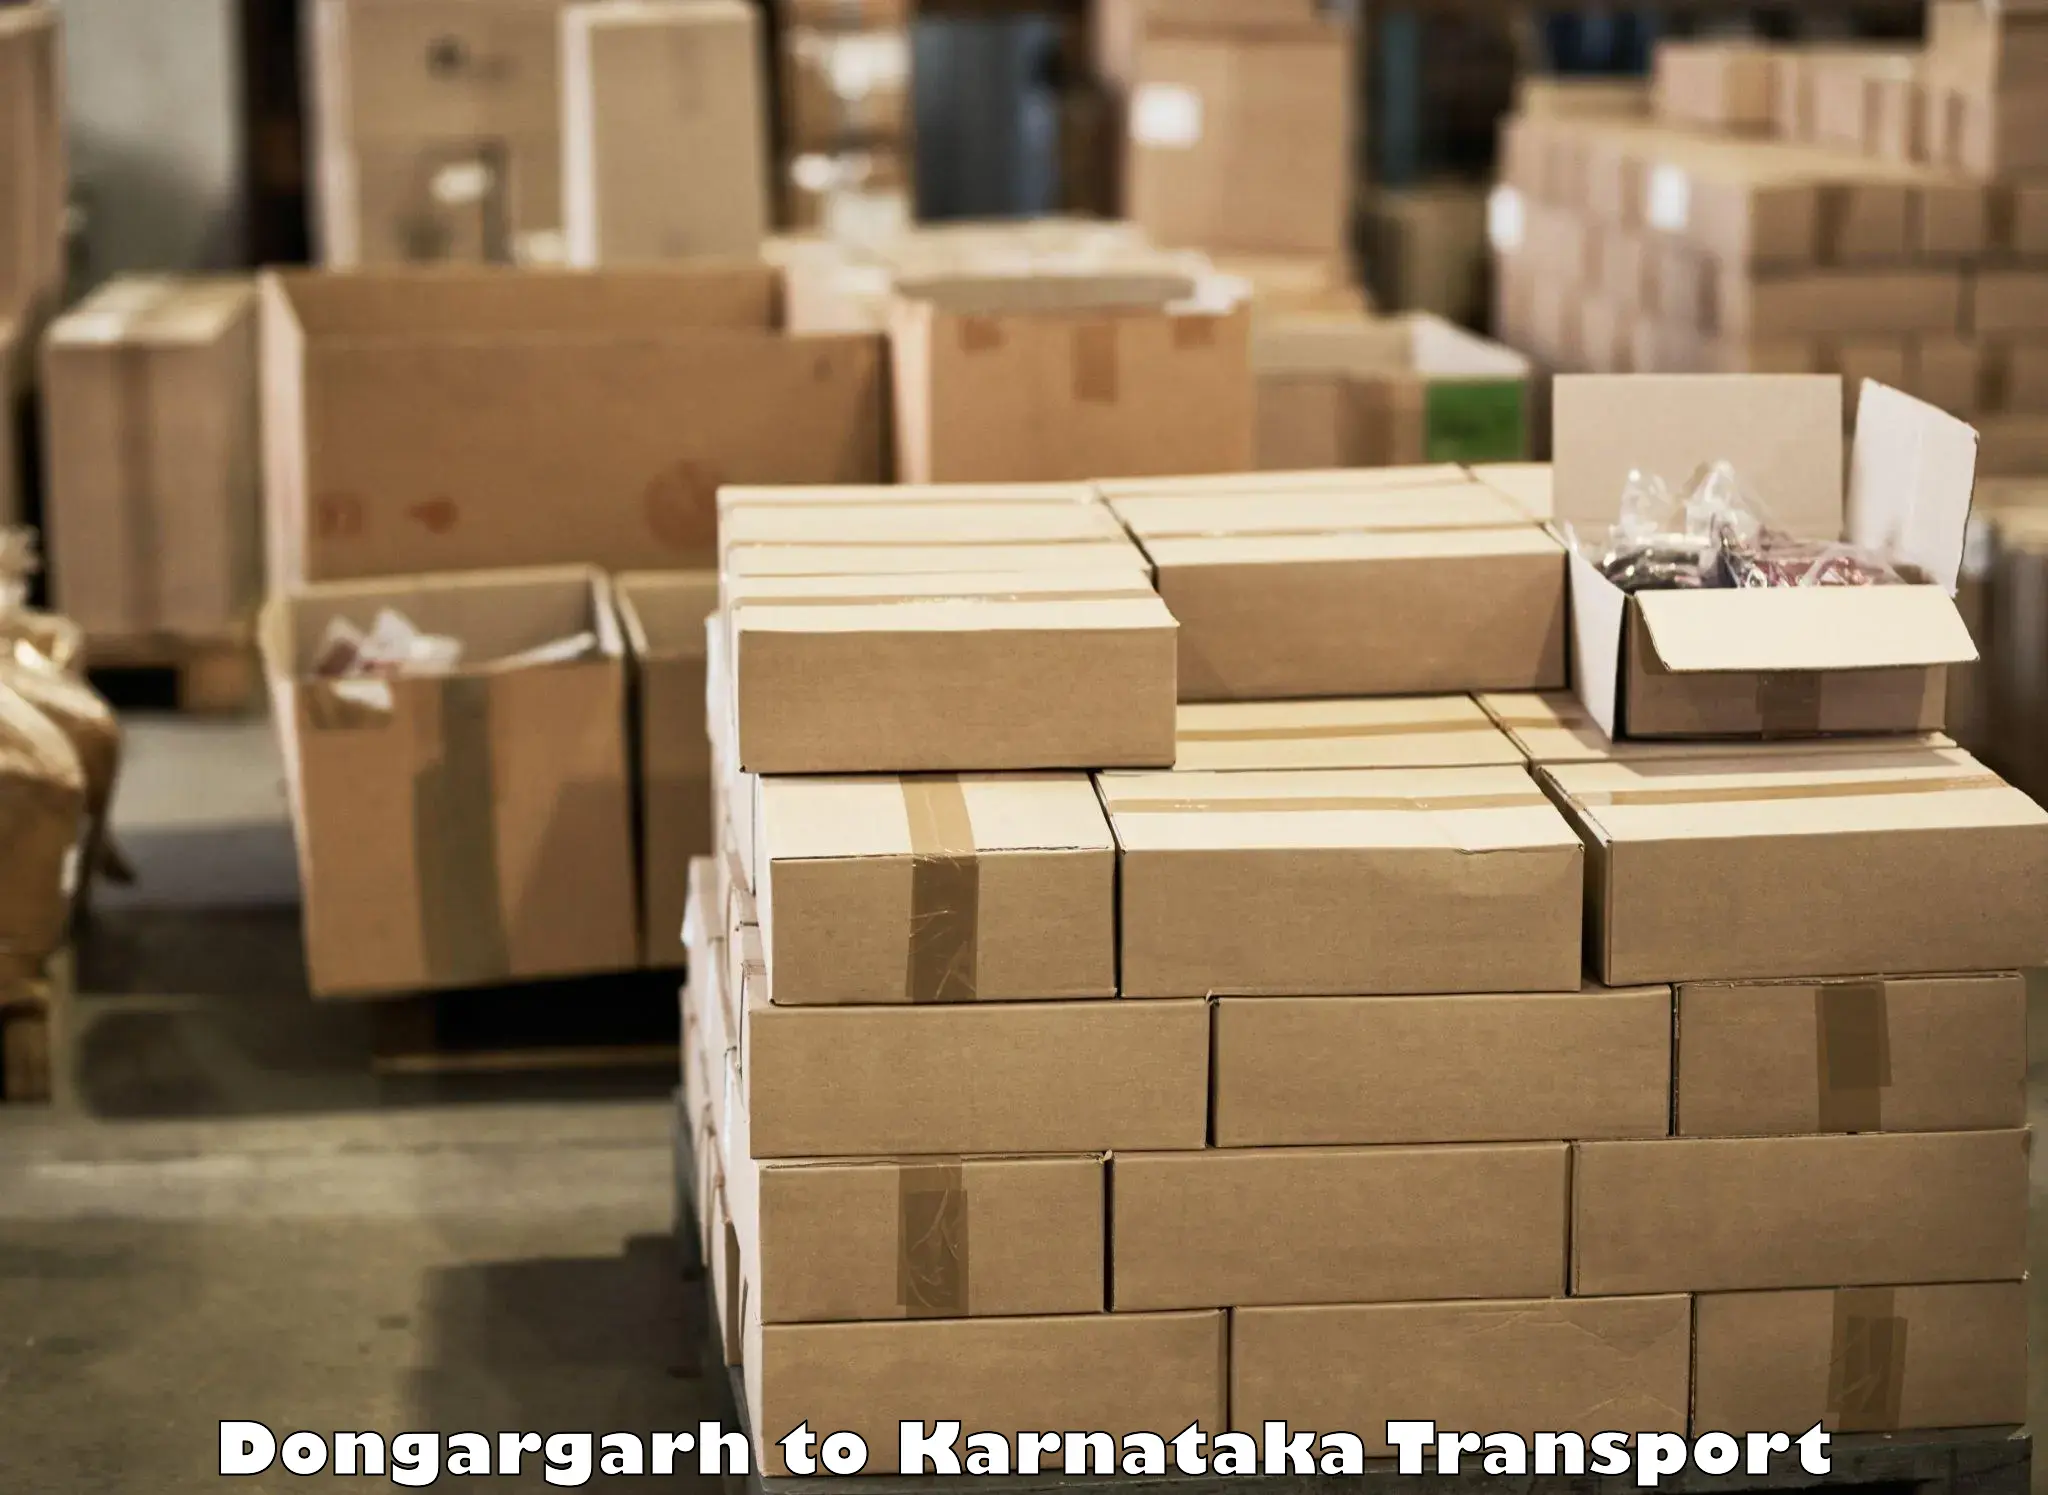 Furniture transport service Dongargarh to Karnataka